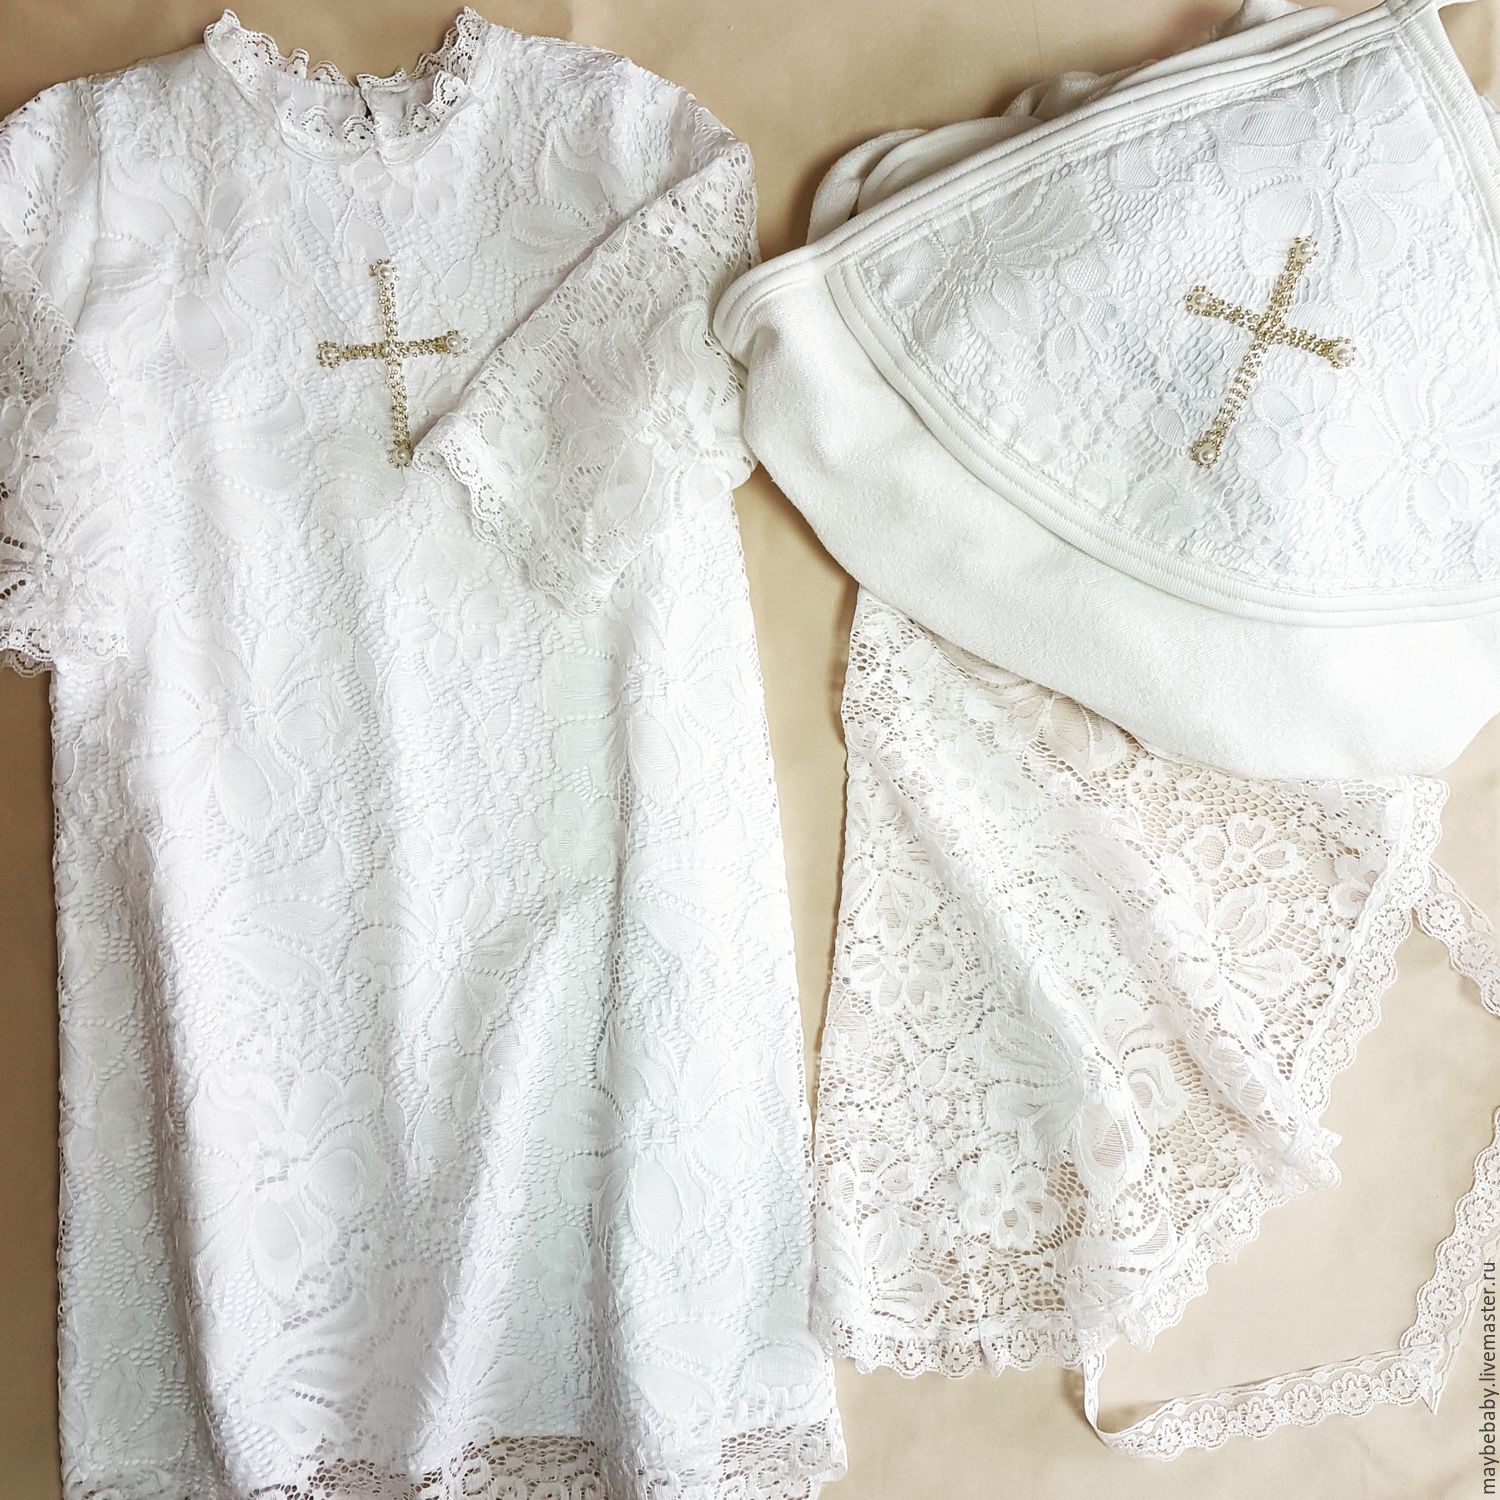 Что покупают крестные на крестины мальчику. Одежда для крещения мальчика. Одежда для крещения девочки. Крестильный набор для девочки. Крещение ребенка одежда для девочек.